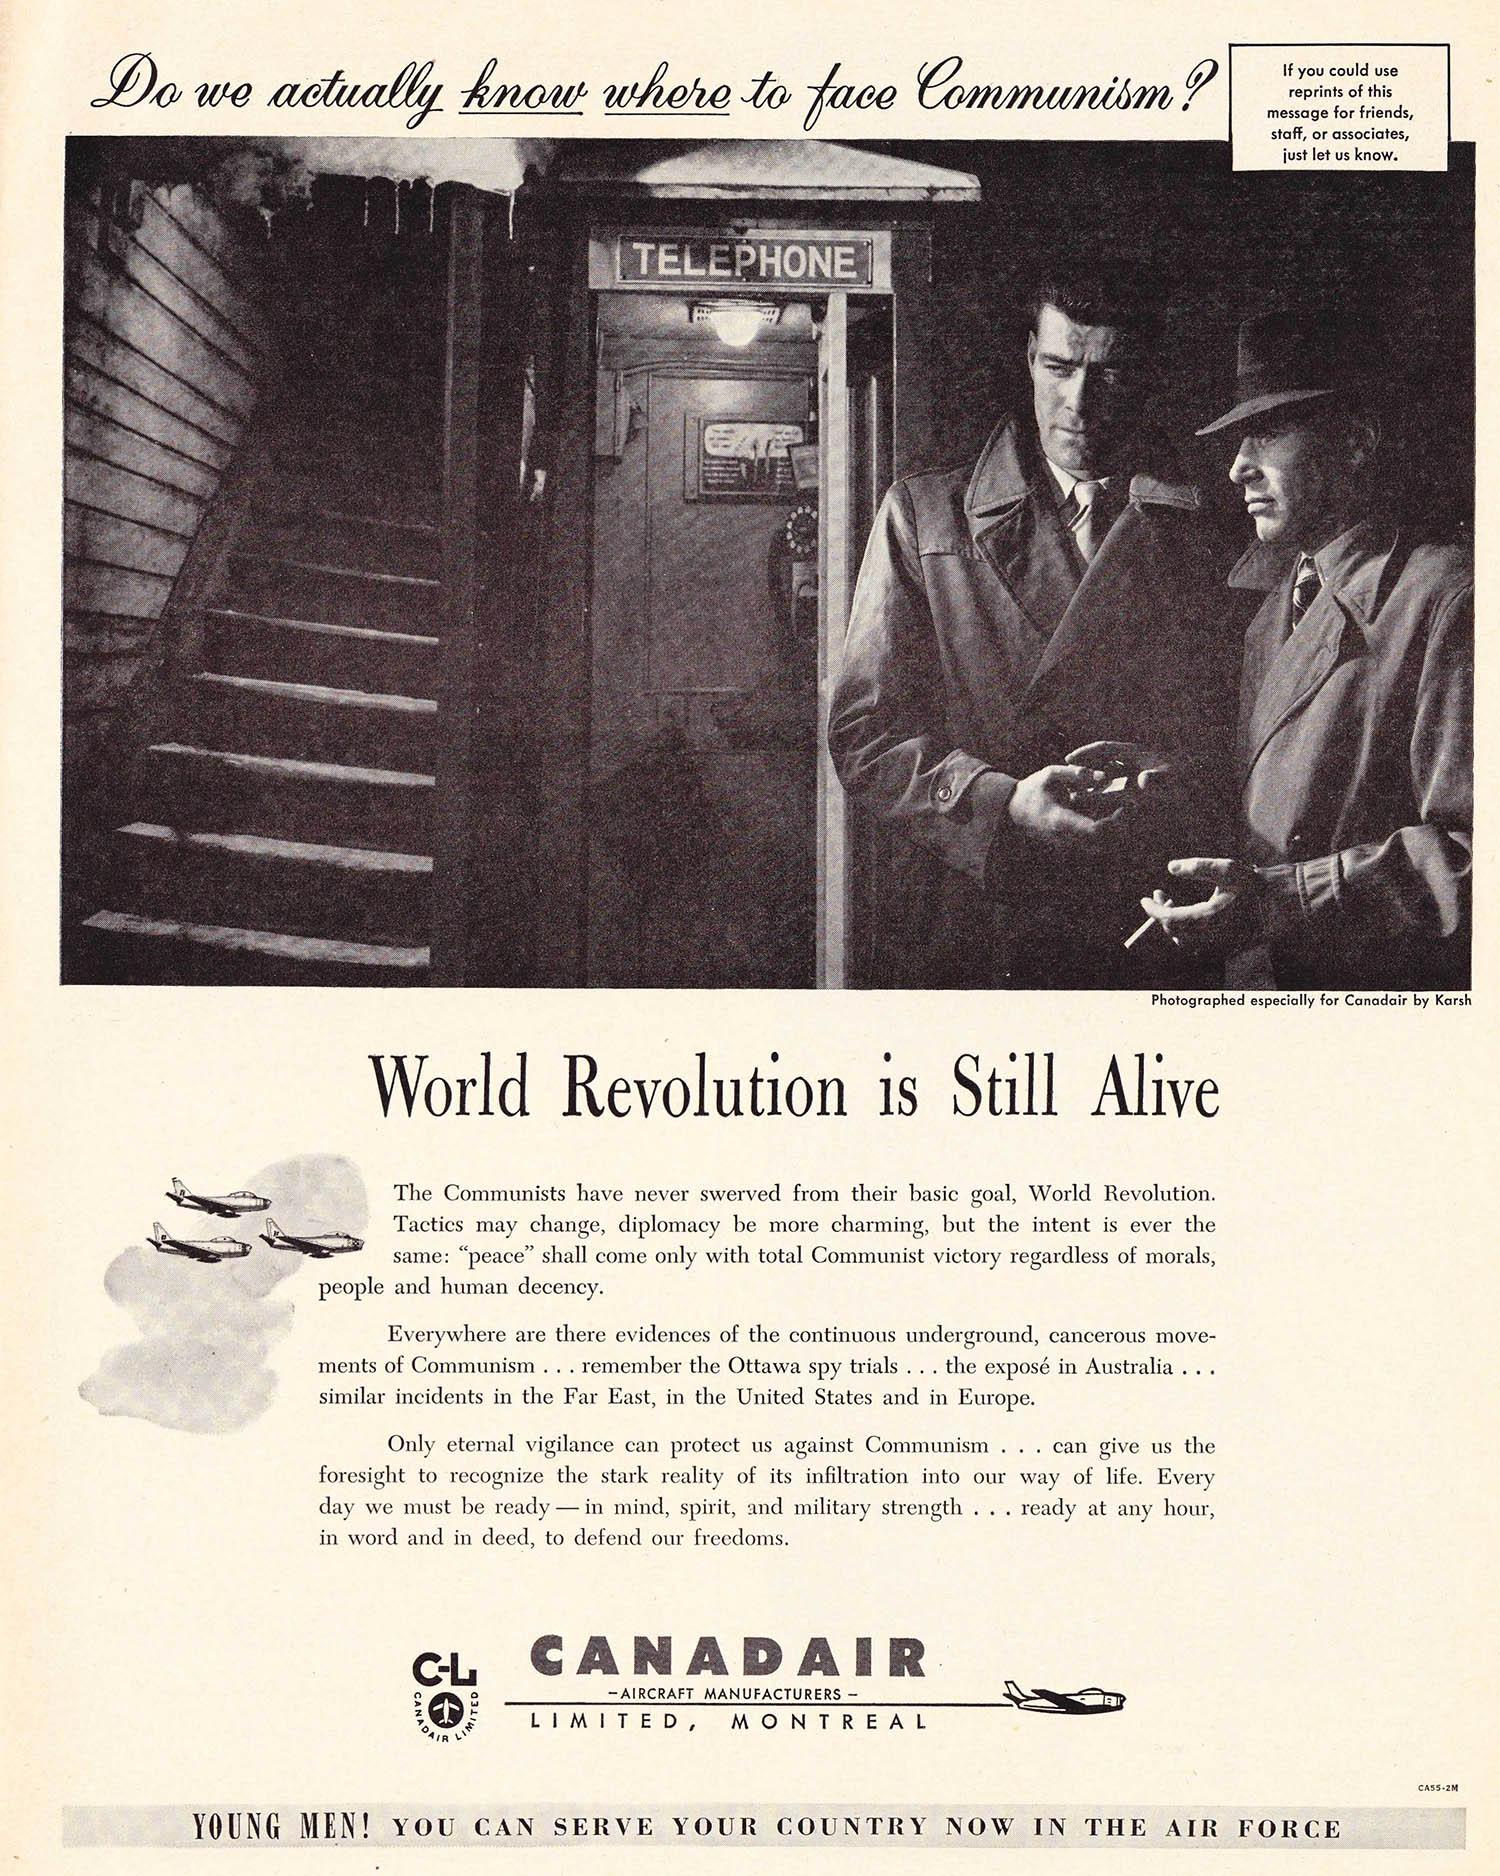 La publicité 1955: 30 Brillante Annonces à partir de la Mi-Siècle au Canada